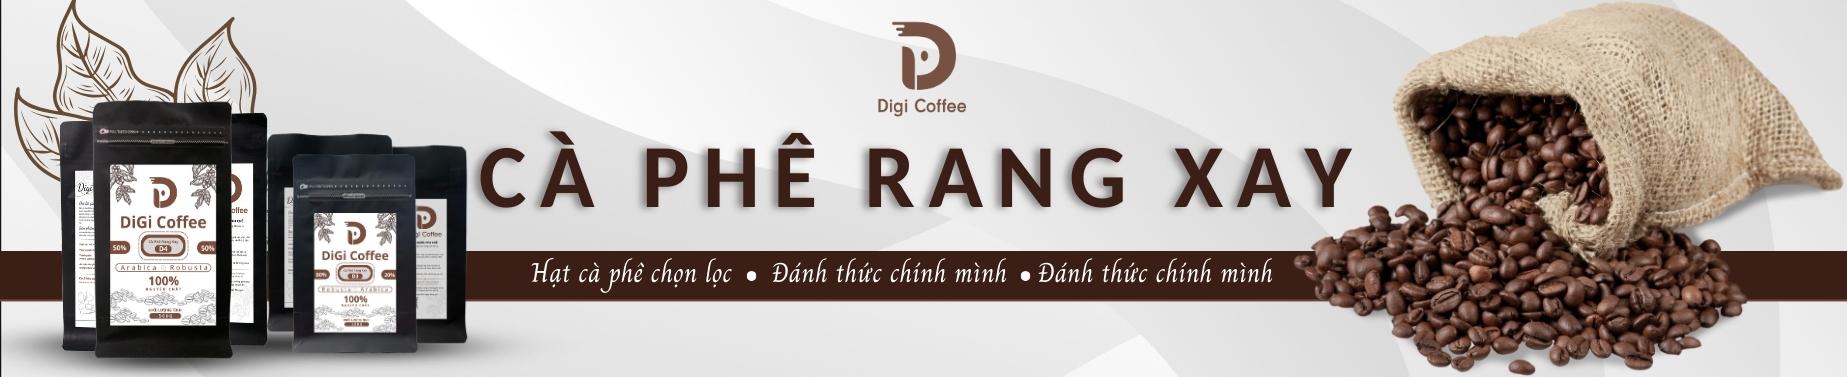 Cà phê rang xay chọn lọc uy tín Digi Coffee